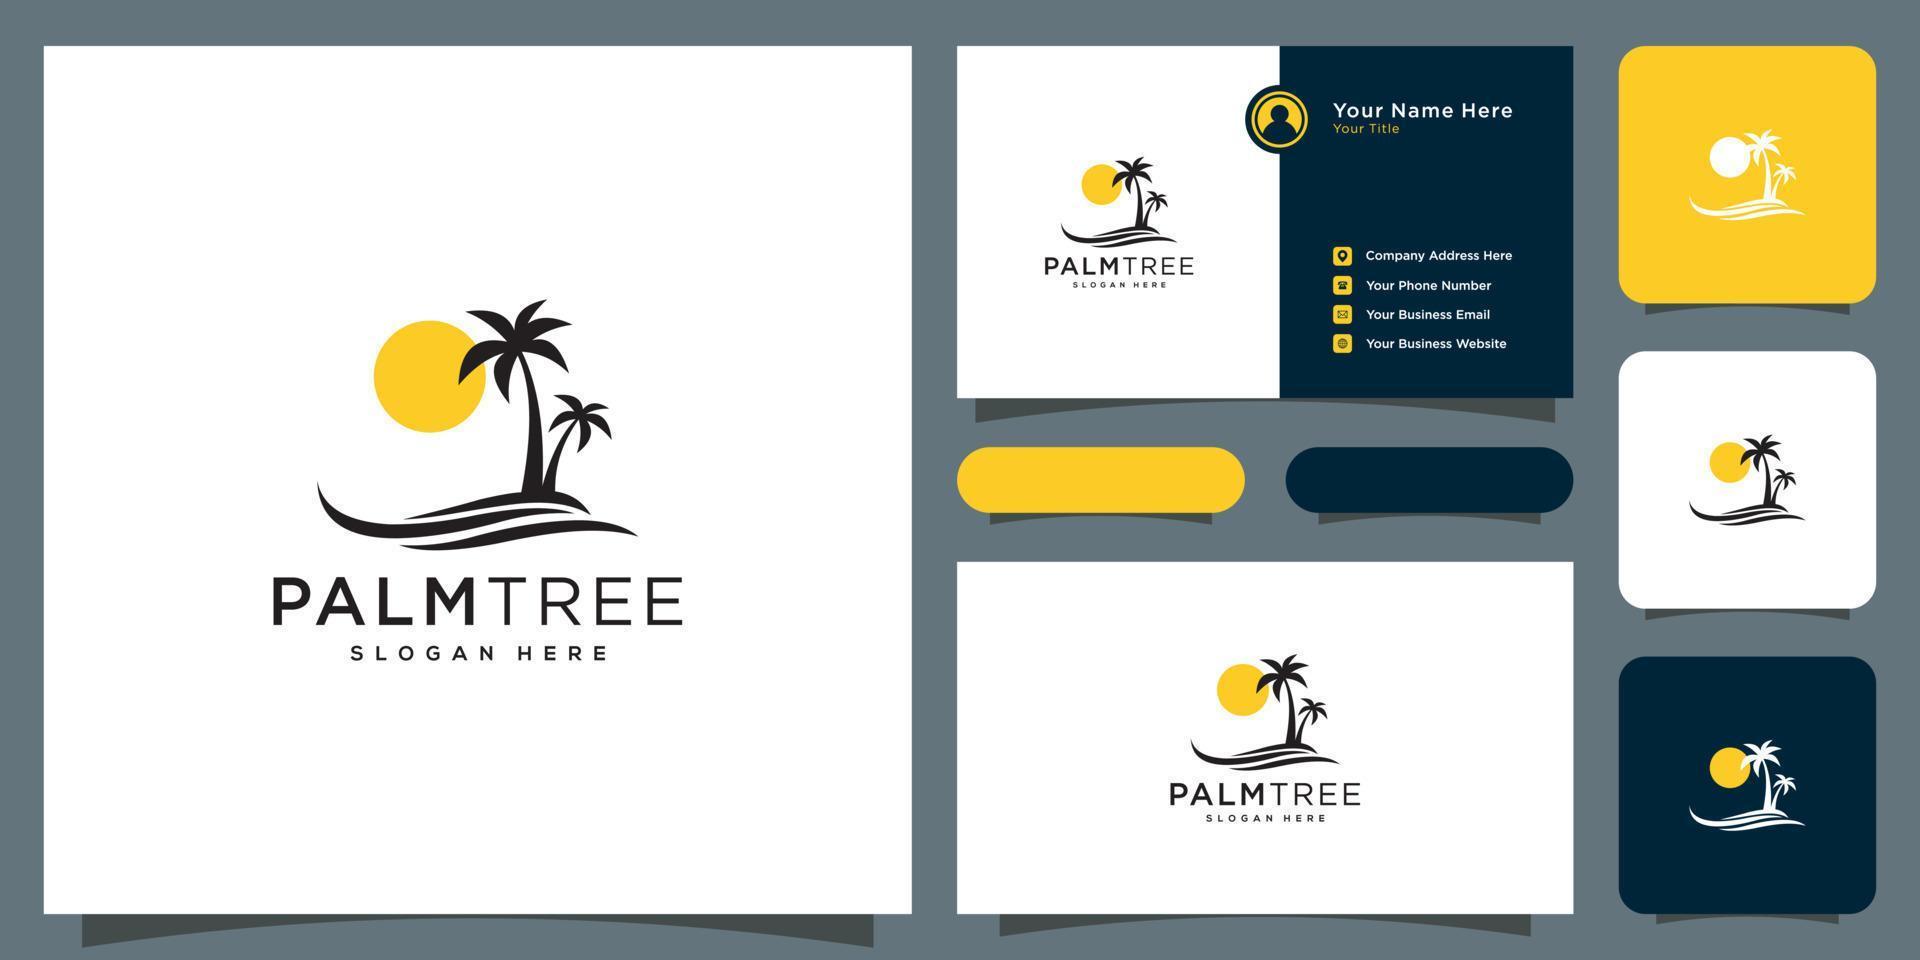 conception de vecteur de logo palmier et carte de visite